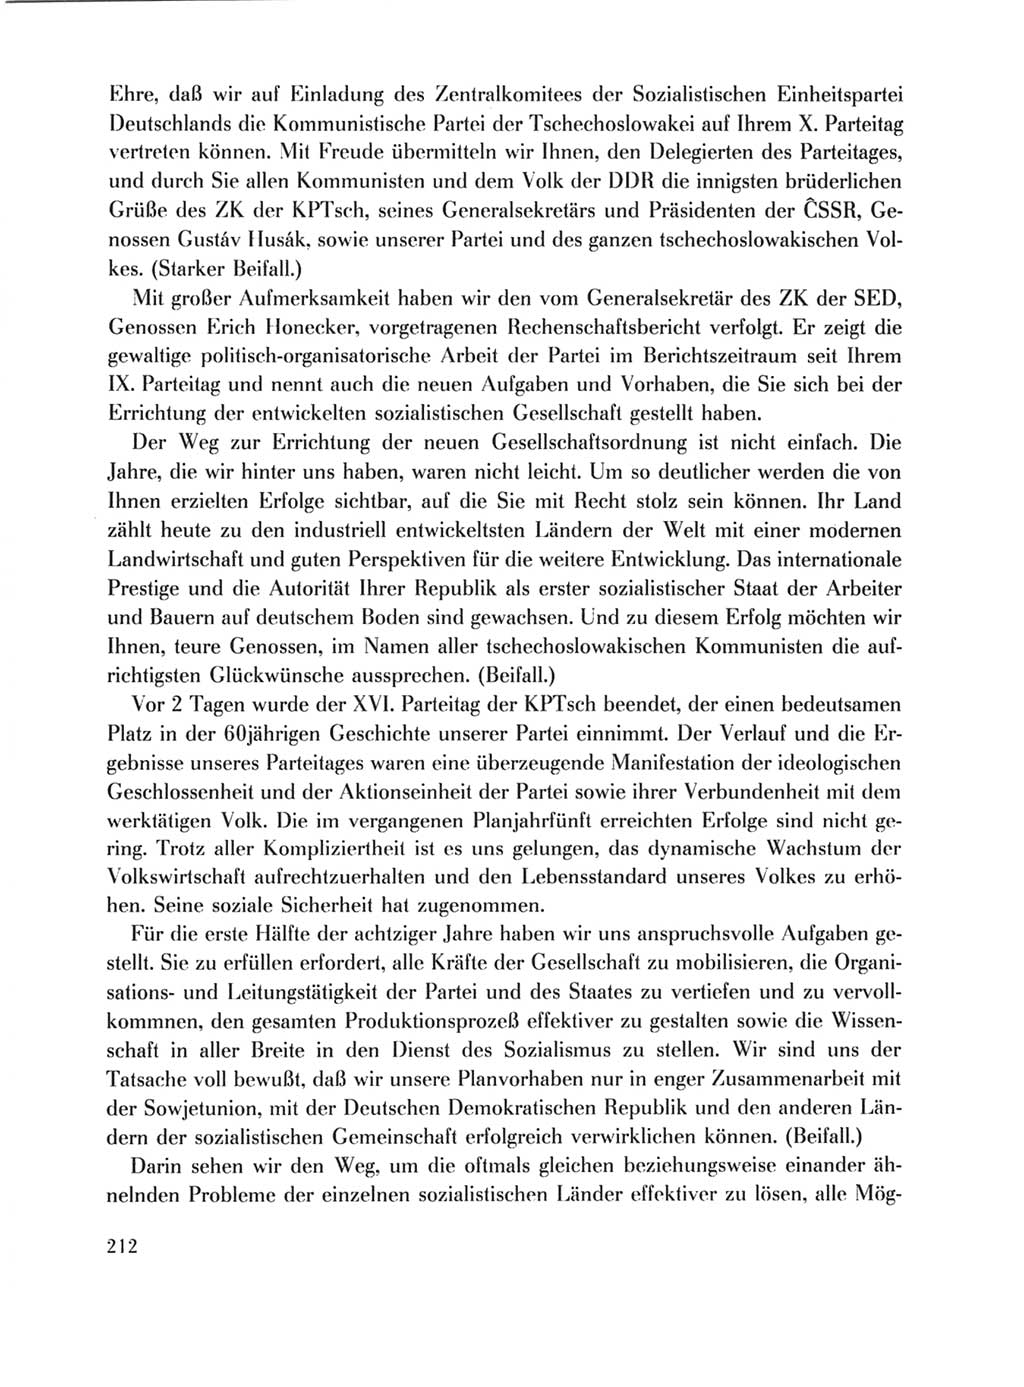 Protokoll der Verhandlungen des Ⅹ. Parteitages der Sozialistischen Einheitspartei Deutschlands (SED) [Deutsche Demokratische Republik (DDR)] 1981, Band 1, Seite 212 (Prot. Verh. Ⅹ. PT SED DDR 1981, Bd. 1, S. 212)